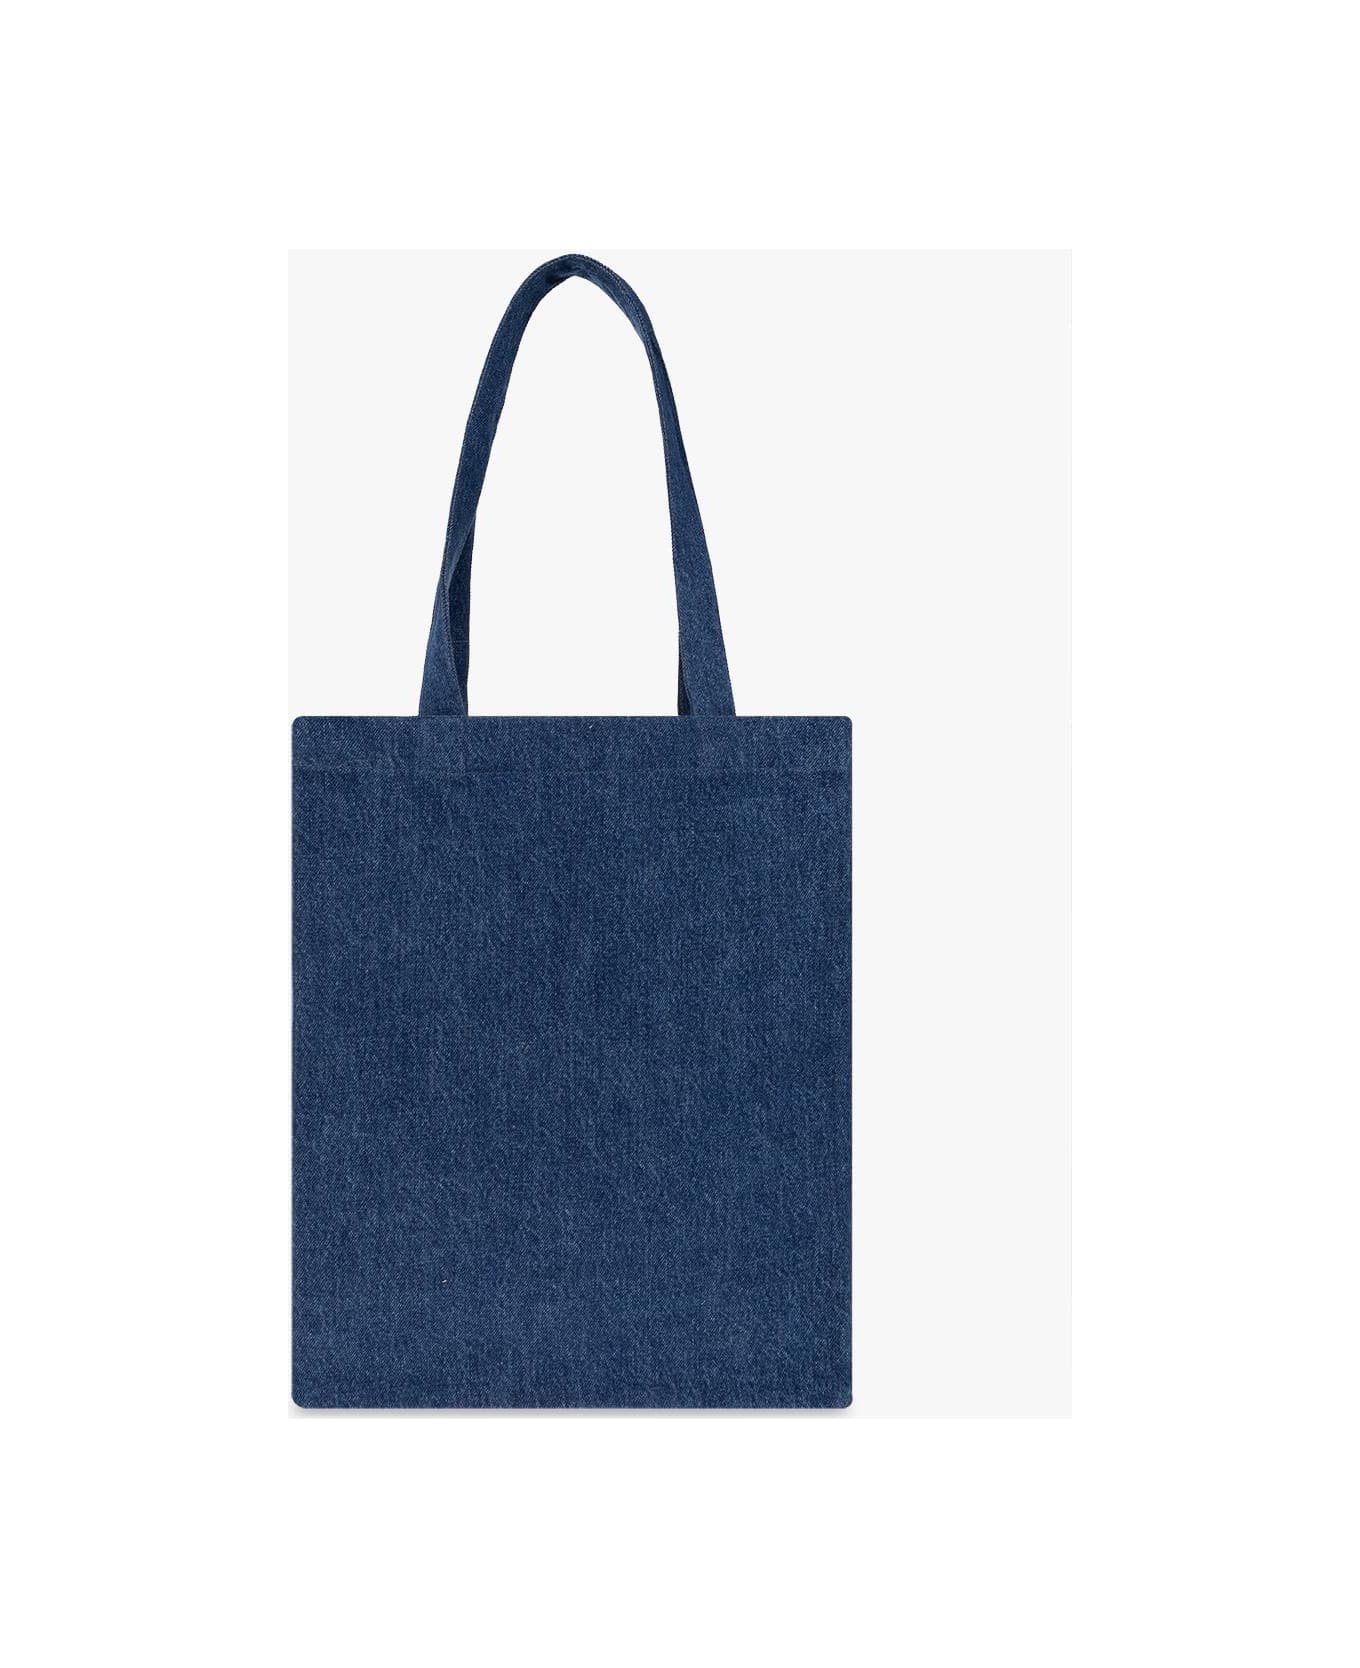 A.P.C. 'lou' Denim Shopper Bag - Washed indigo